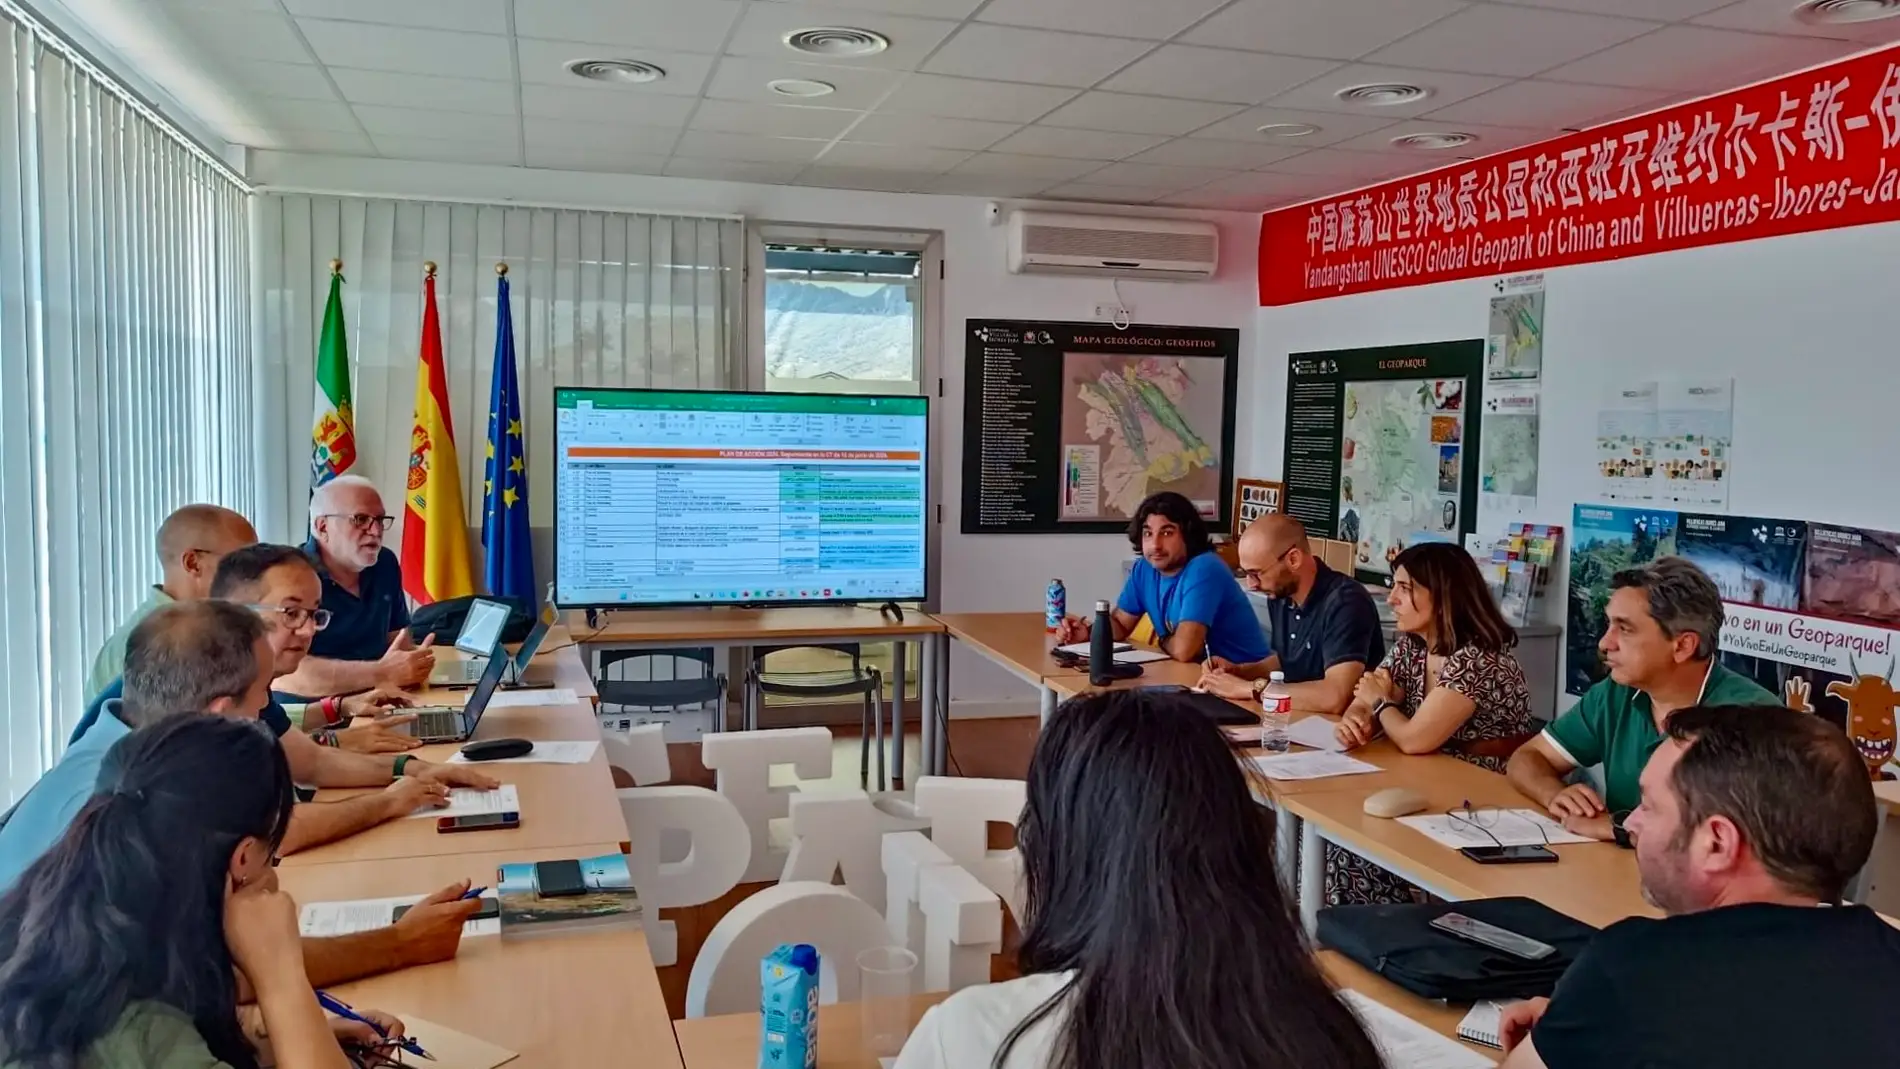 La Diputación de Cáceres organiza reuniones comarcales para presentar su Oficina de Transformación Digital